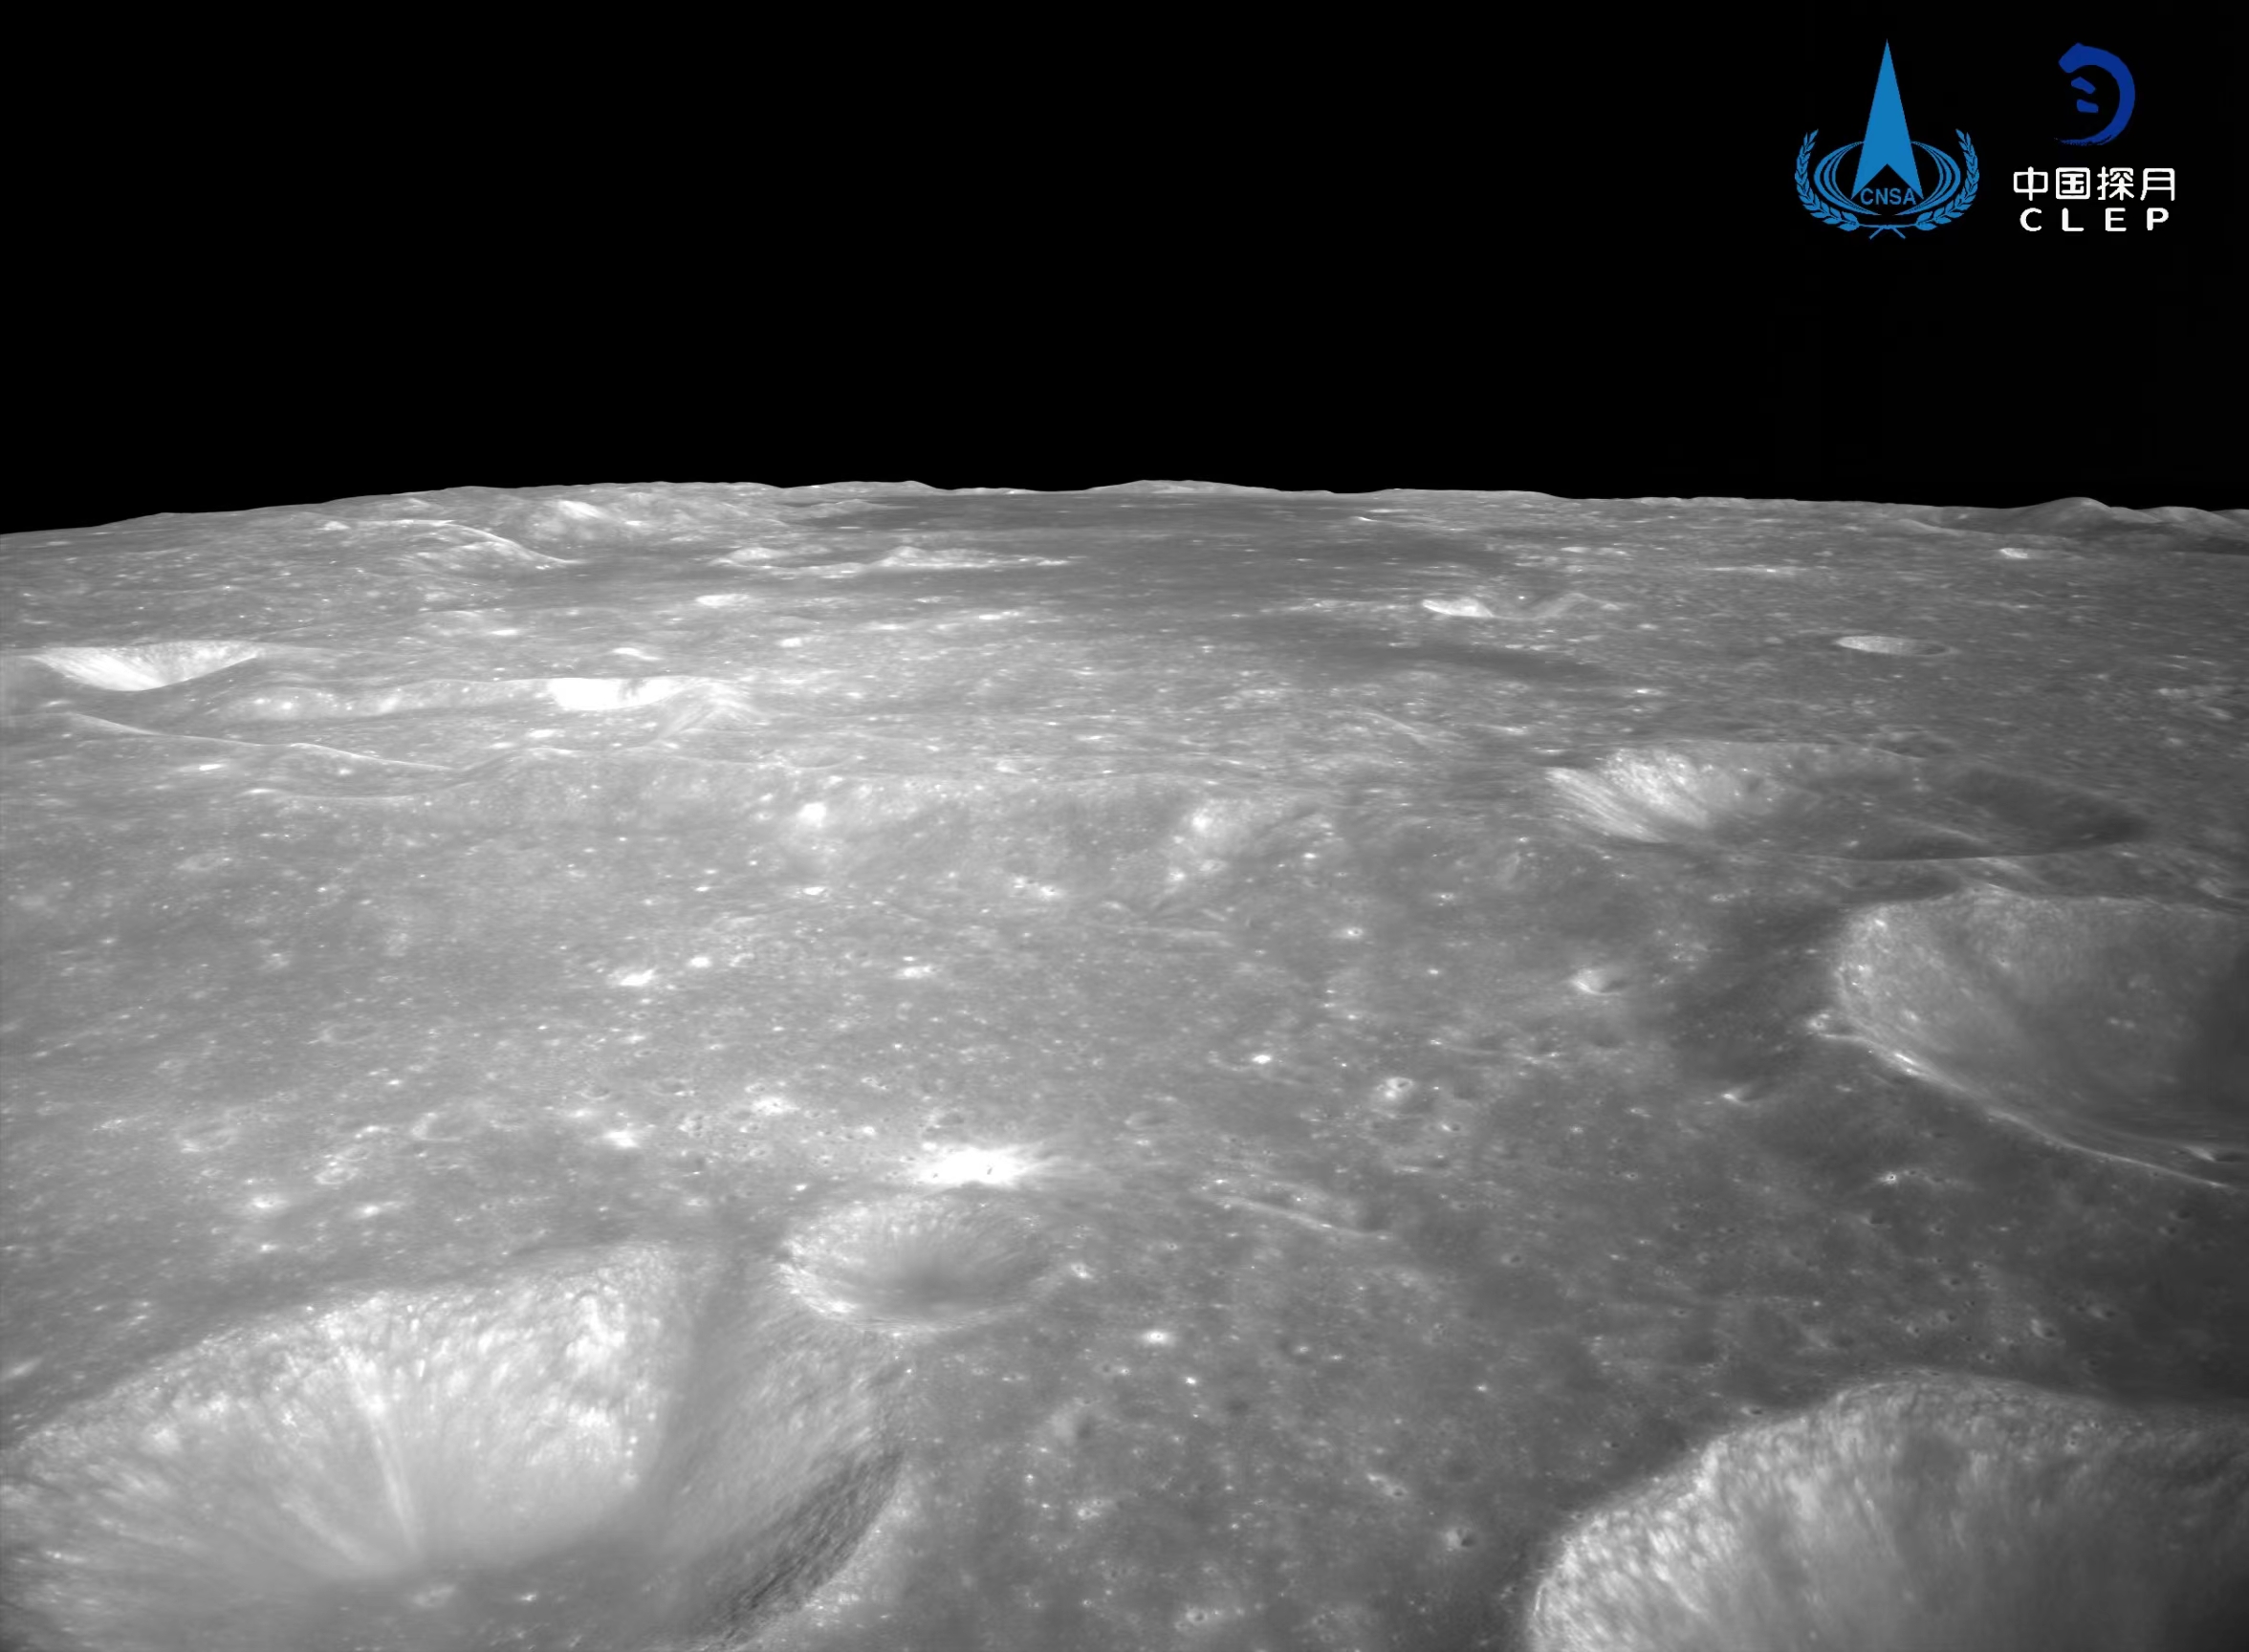 该图由降落相机刚开机时拍摄，背影图像的像图下方是着陆腿和着陆时冲击挤压隆起的月壤。</p>发布对着陆点北侧月面拍摄的嫦娥彩色图像镶嵌制作而成。包括落月过程中降落相机拍摄的号拍着陆区域附近影像
、